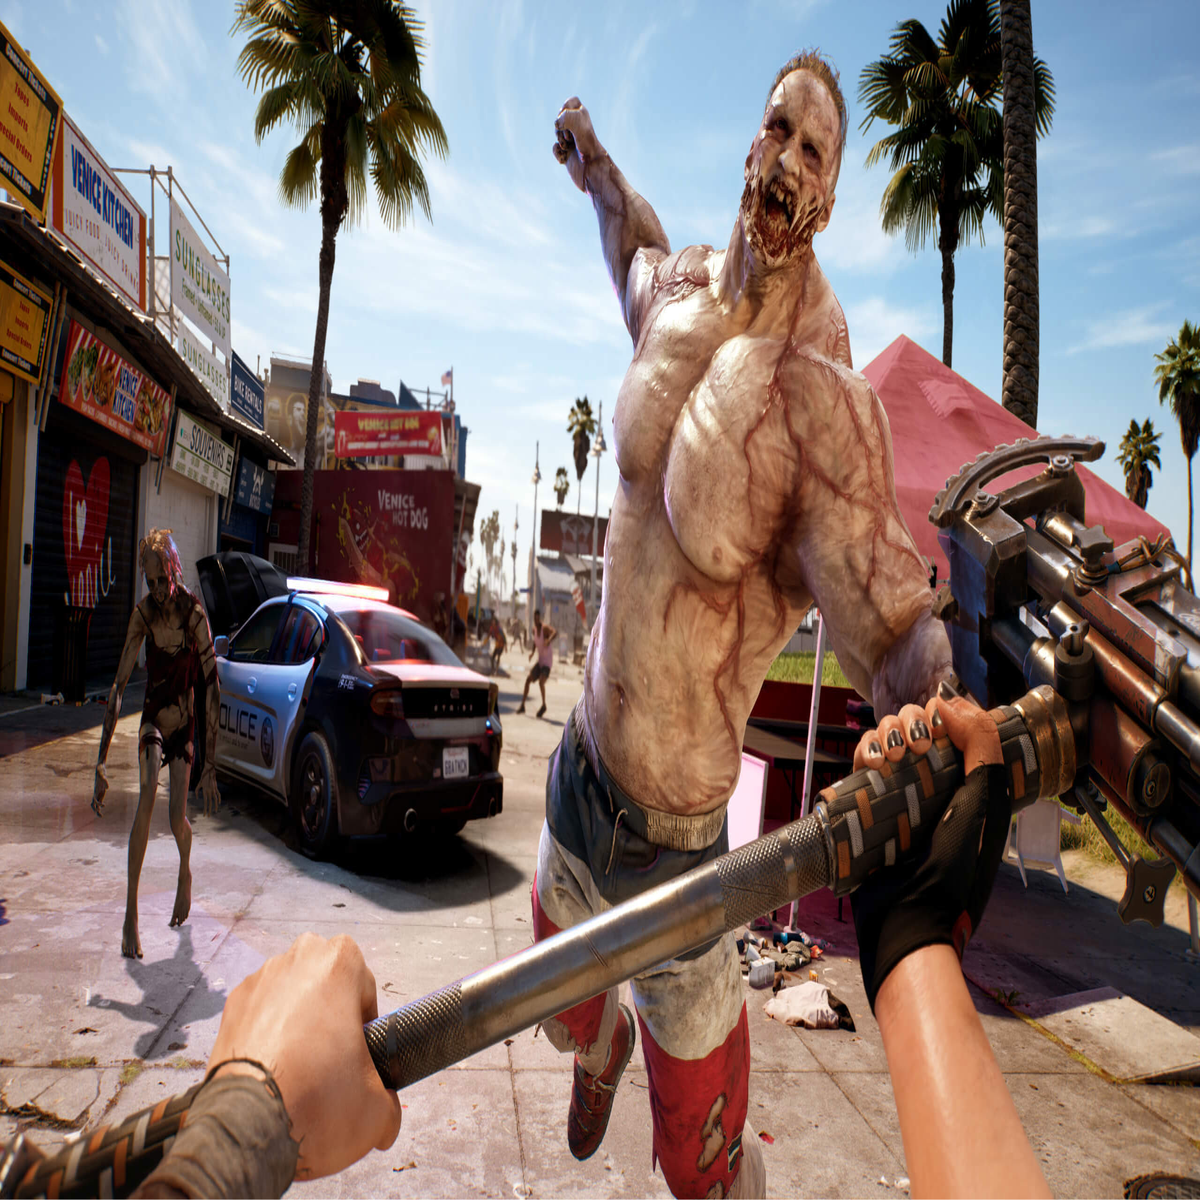 Dead Island 2, Gamescom Reveal Trailer